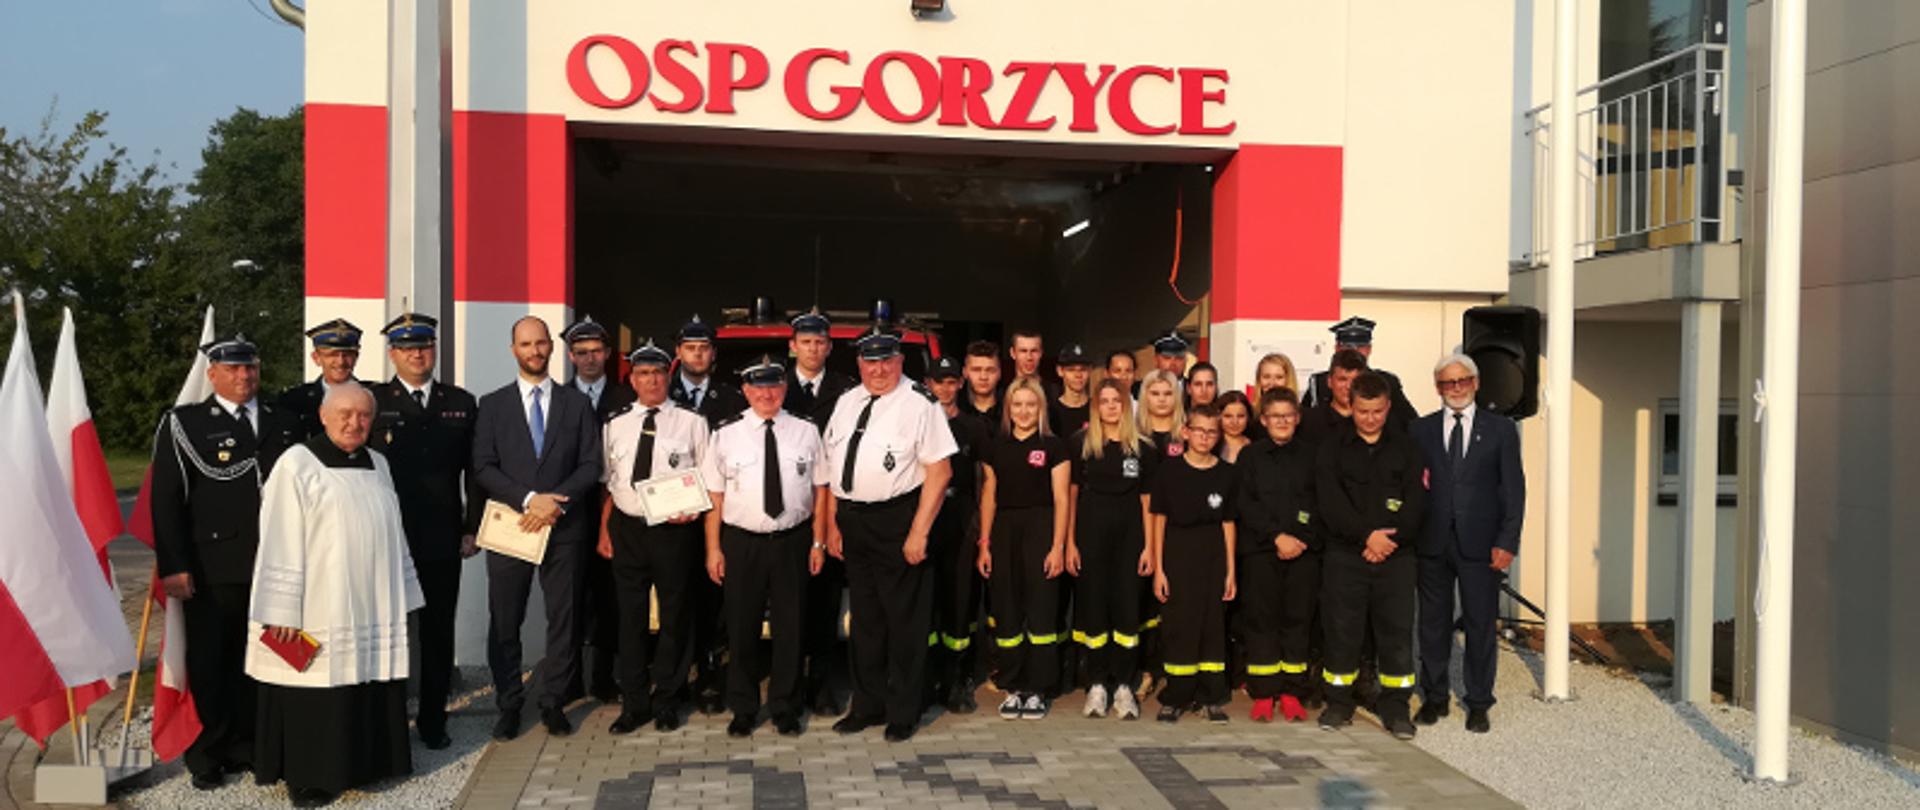 Gorzyce - przekazanie samochodu - strażacy zebrani przed strażnicą OSP Gorzyce pozują do pamiątkowego zdjęcia.